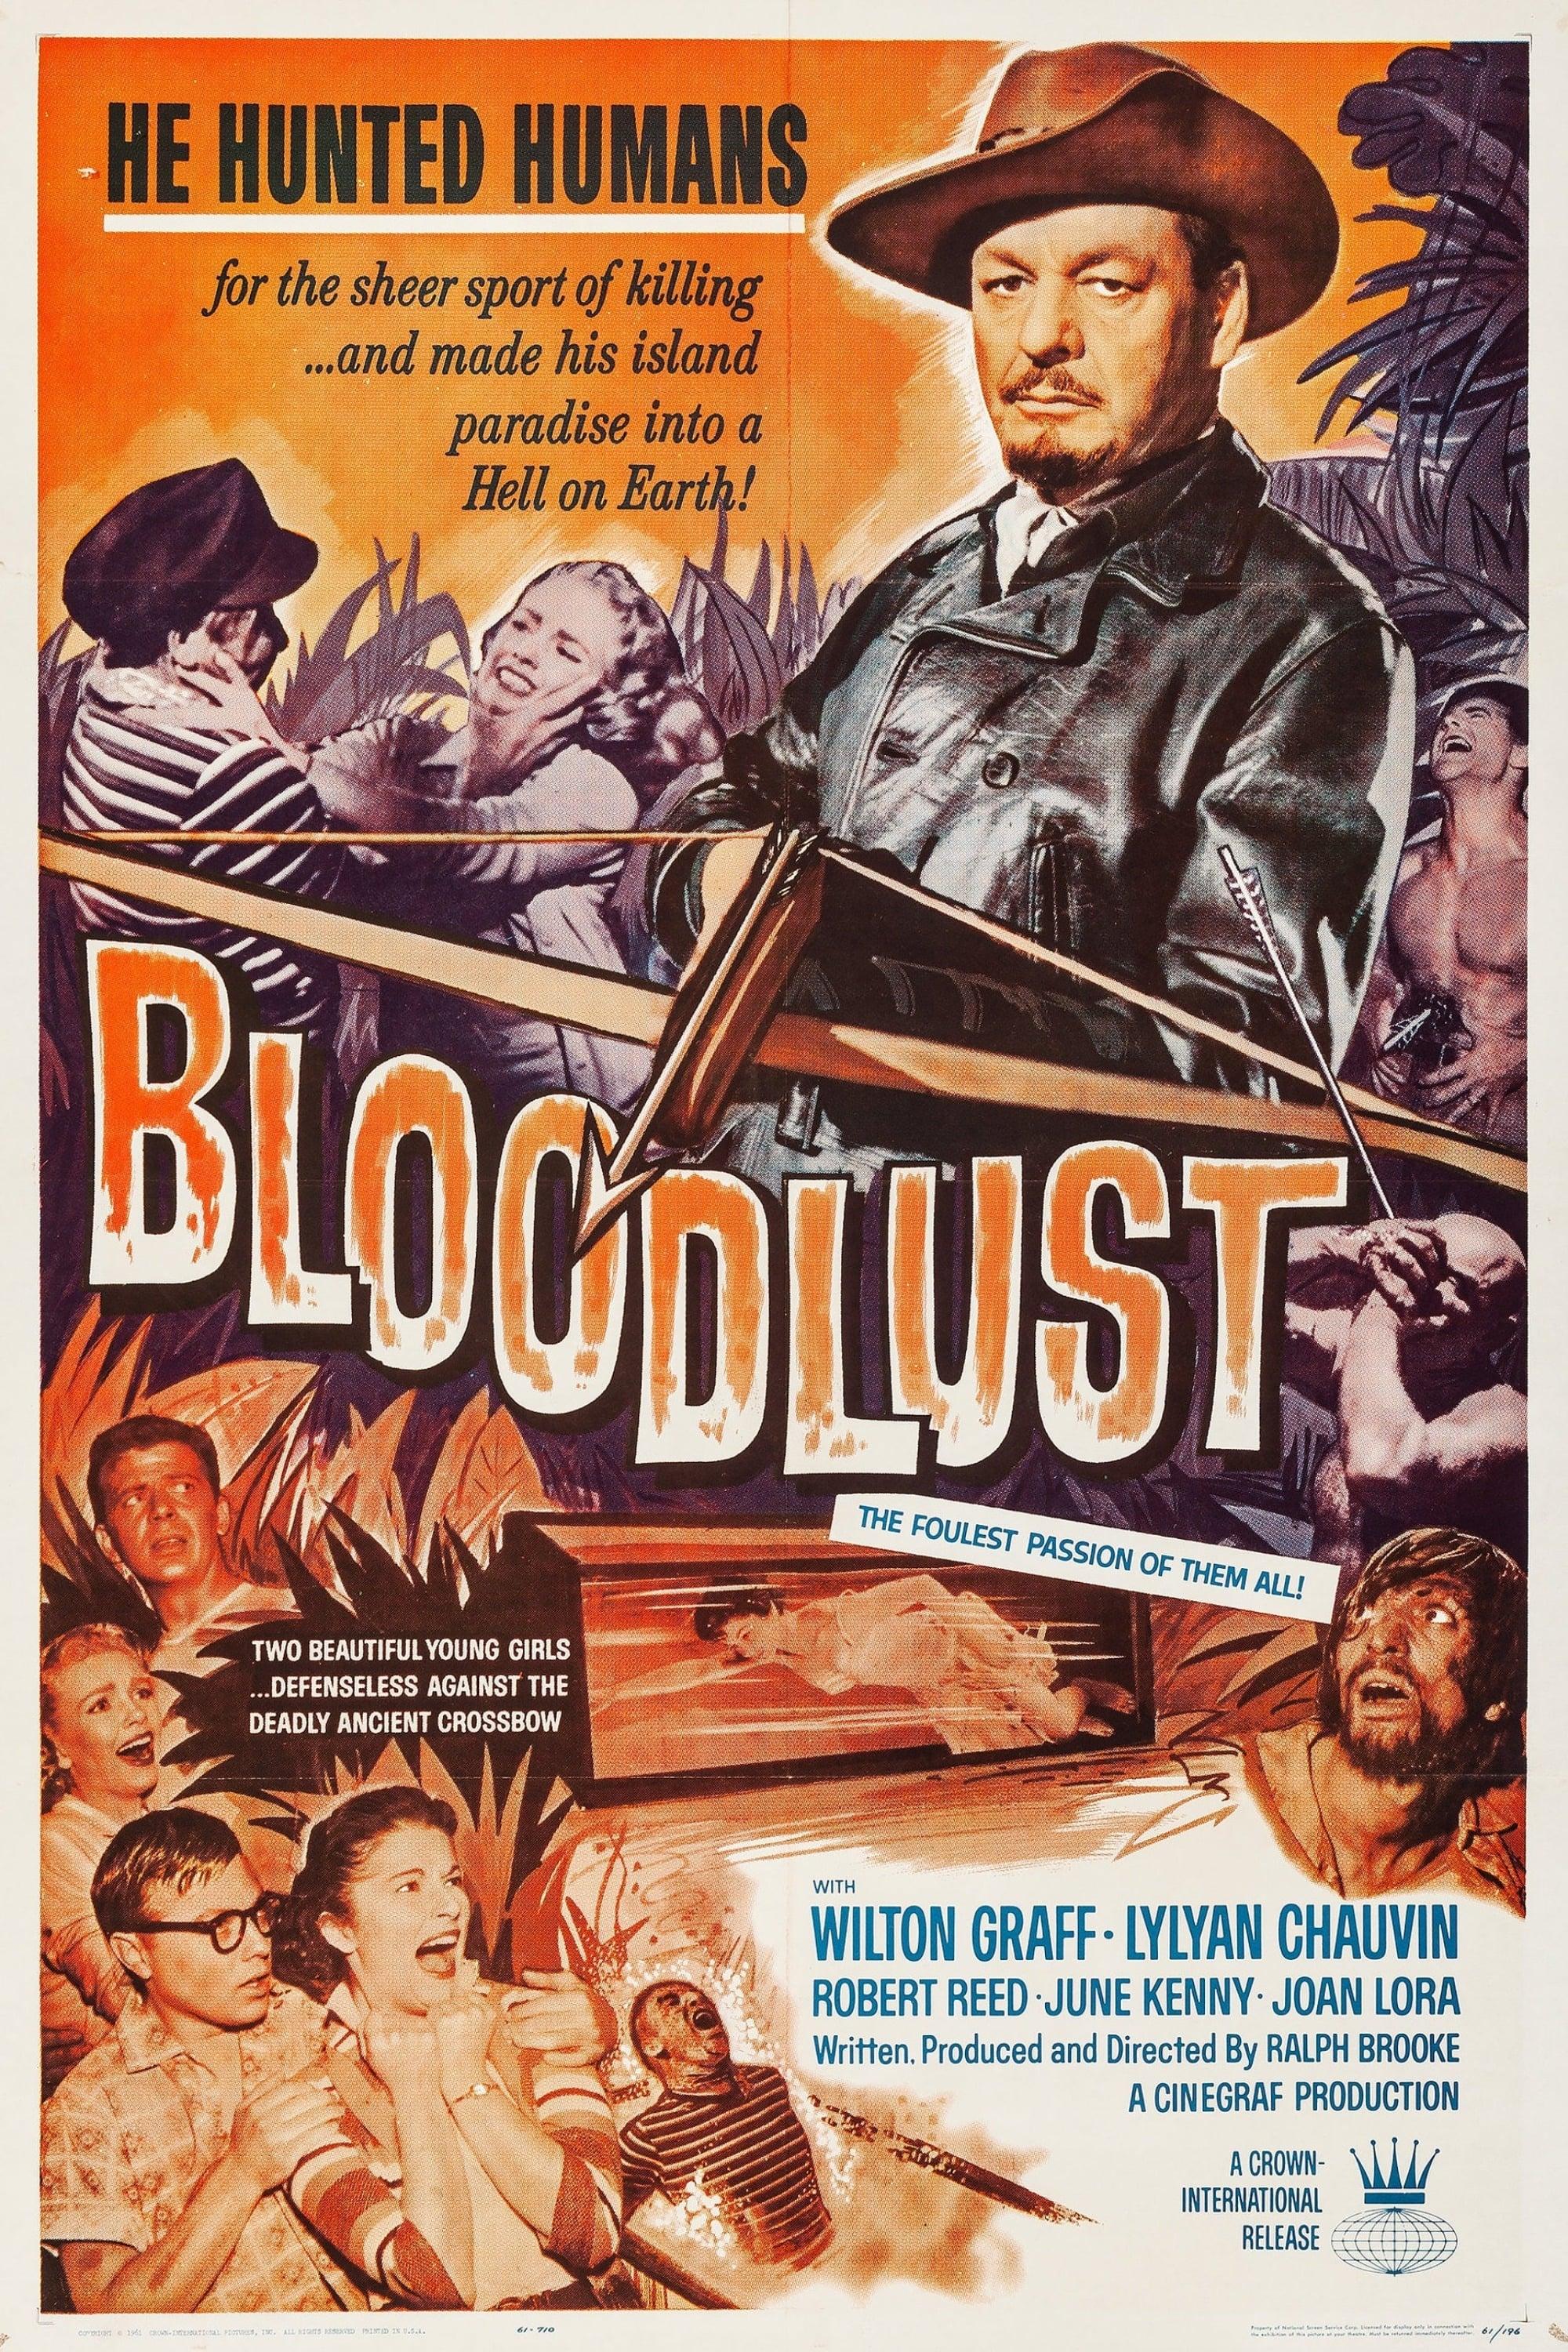 Bloodlust! poster